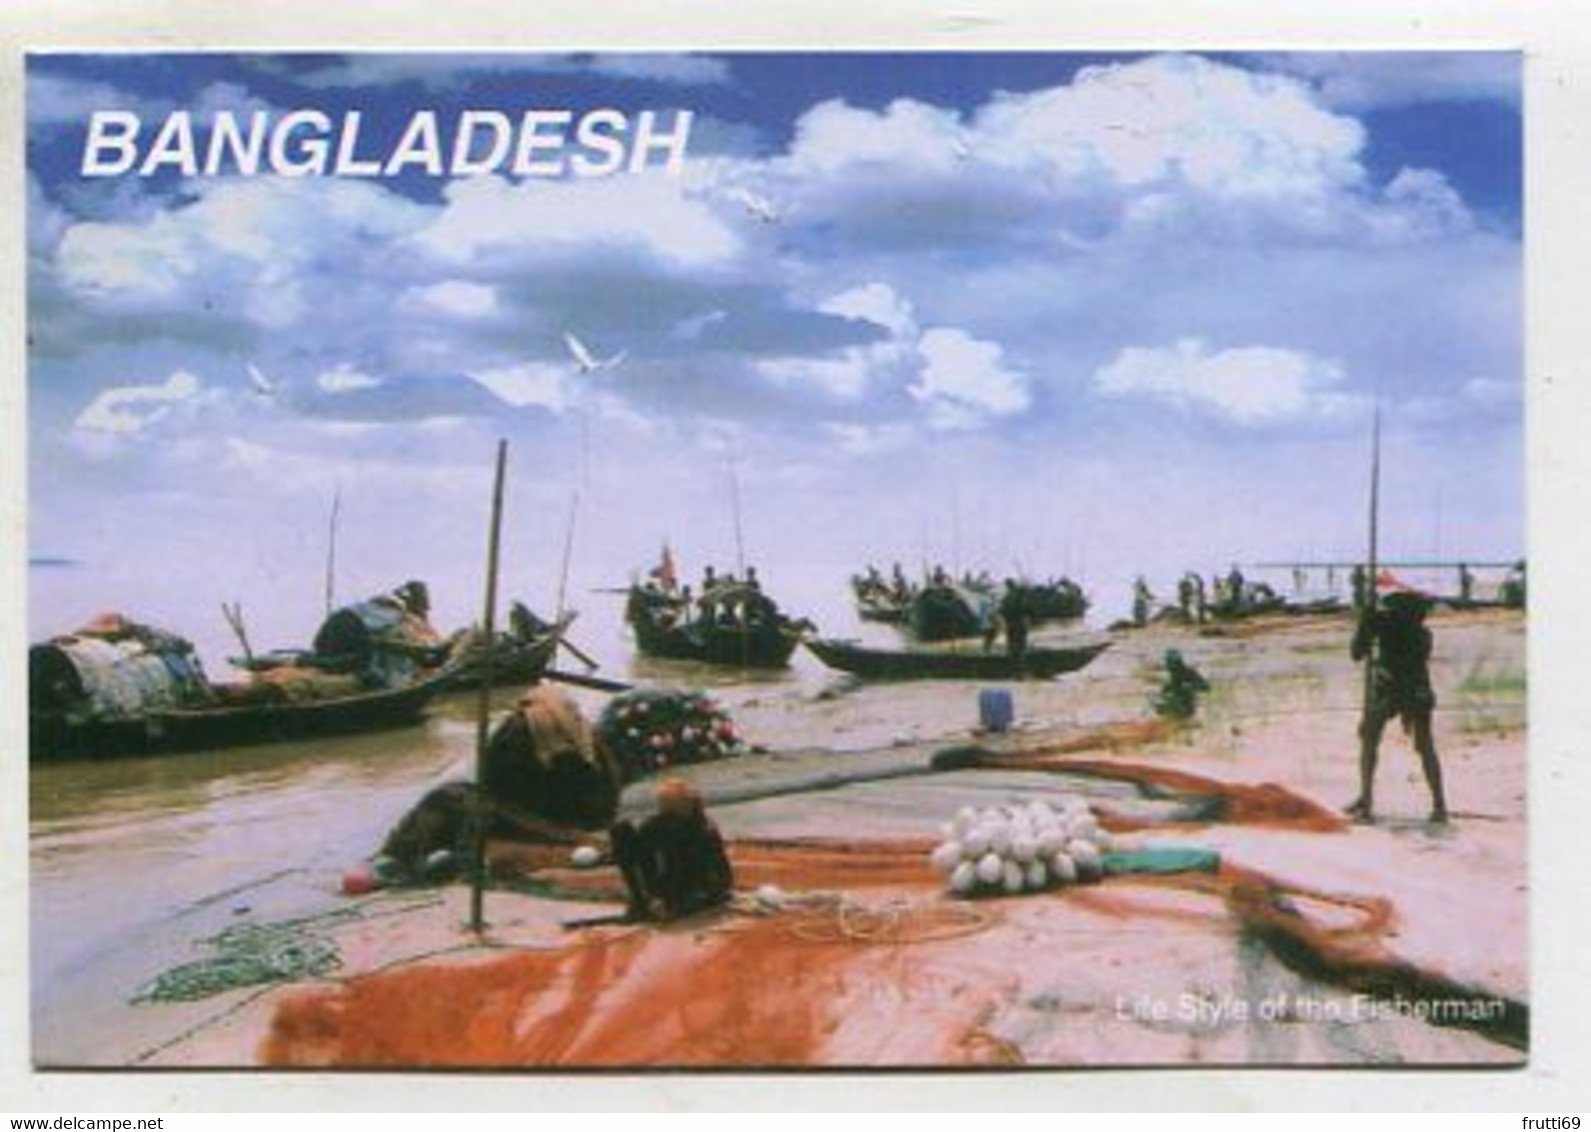 AK 111681 BANGLADESH - Bangladesch